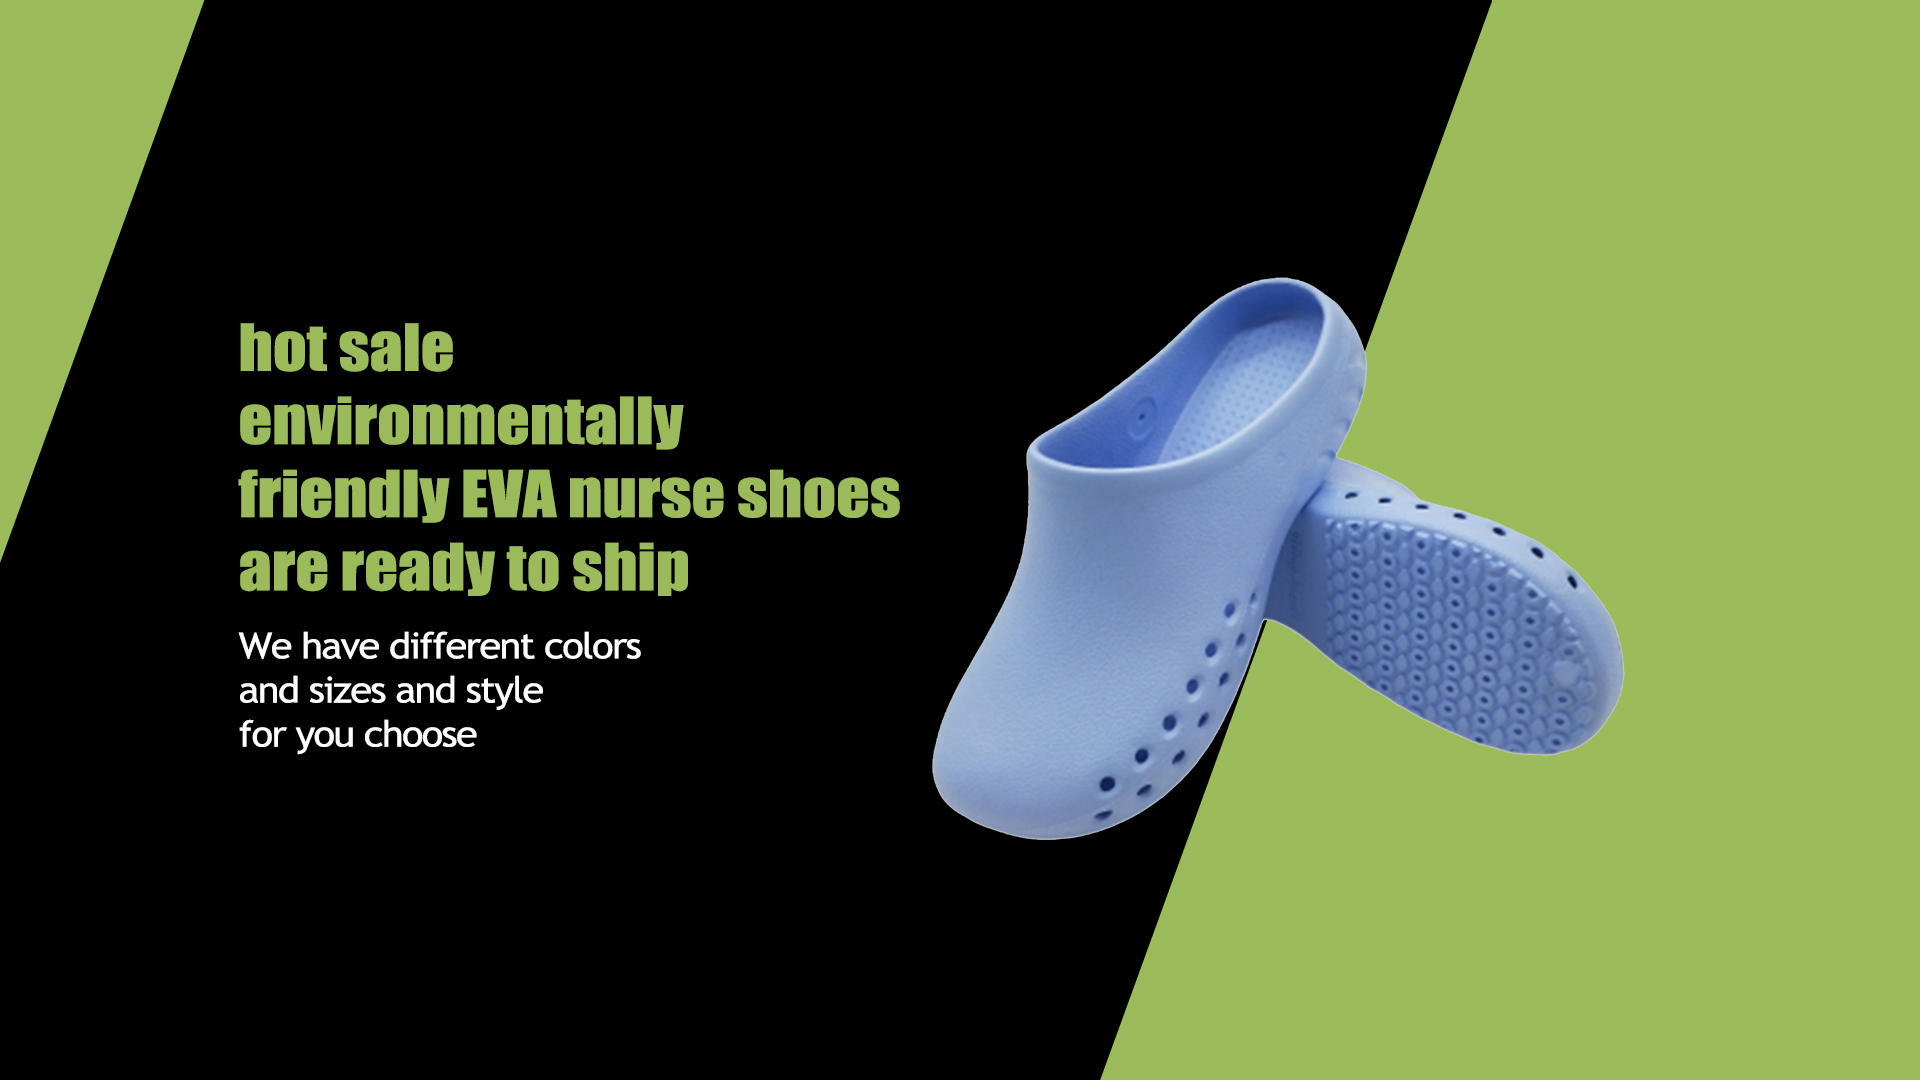 Les chaussures d'infirmière EVA respectueuses de l'environnement sont prêtes à être expédiées